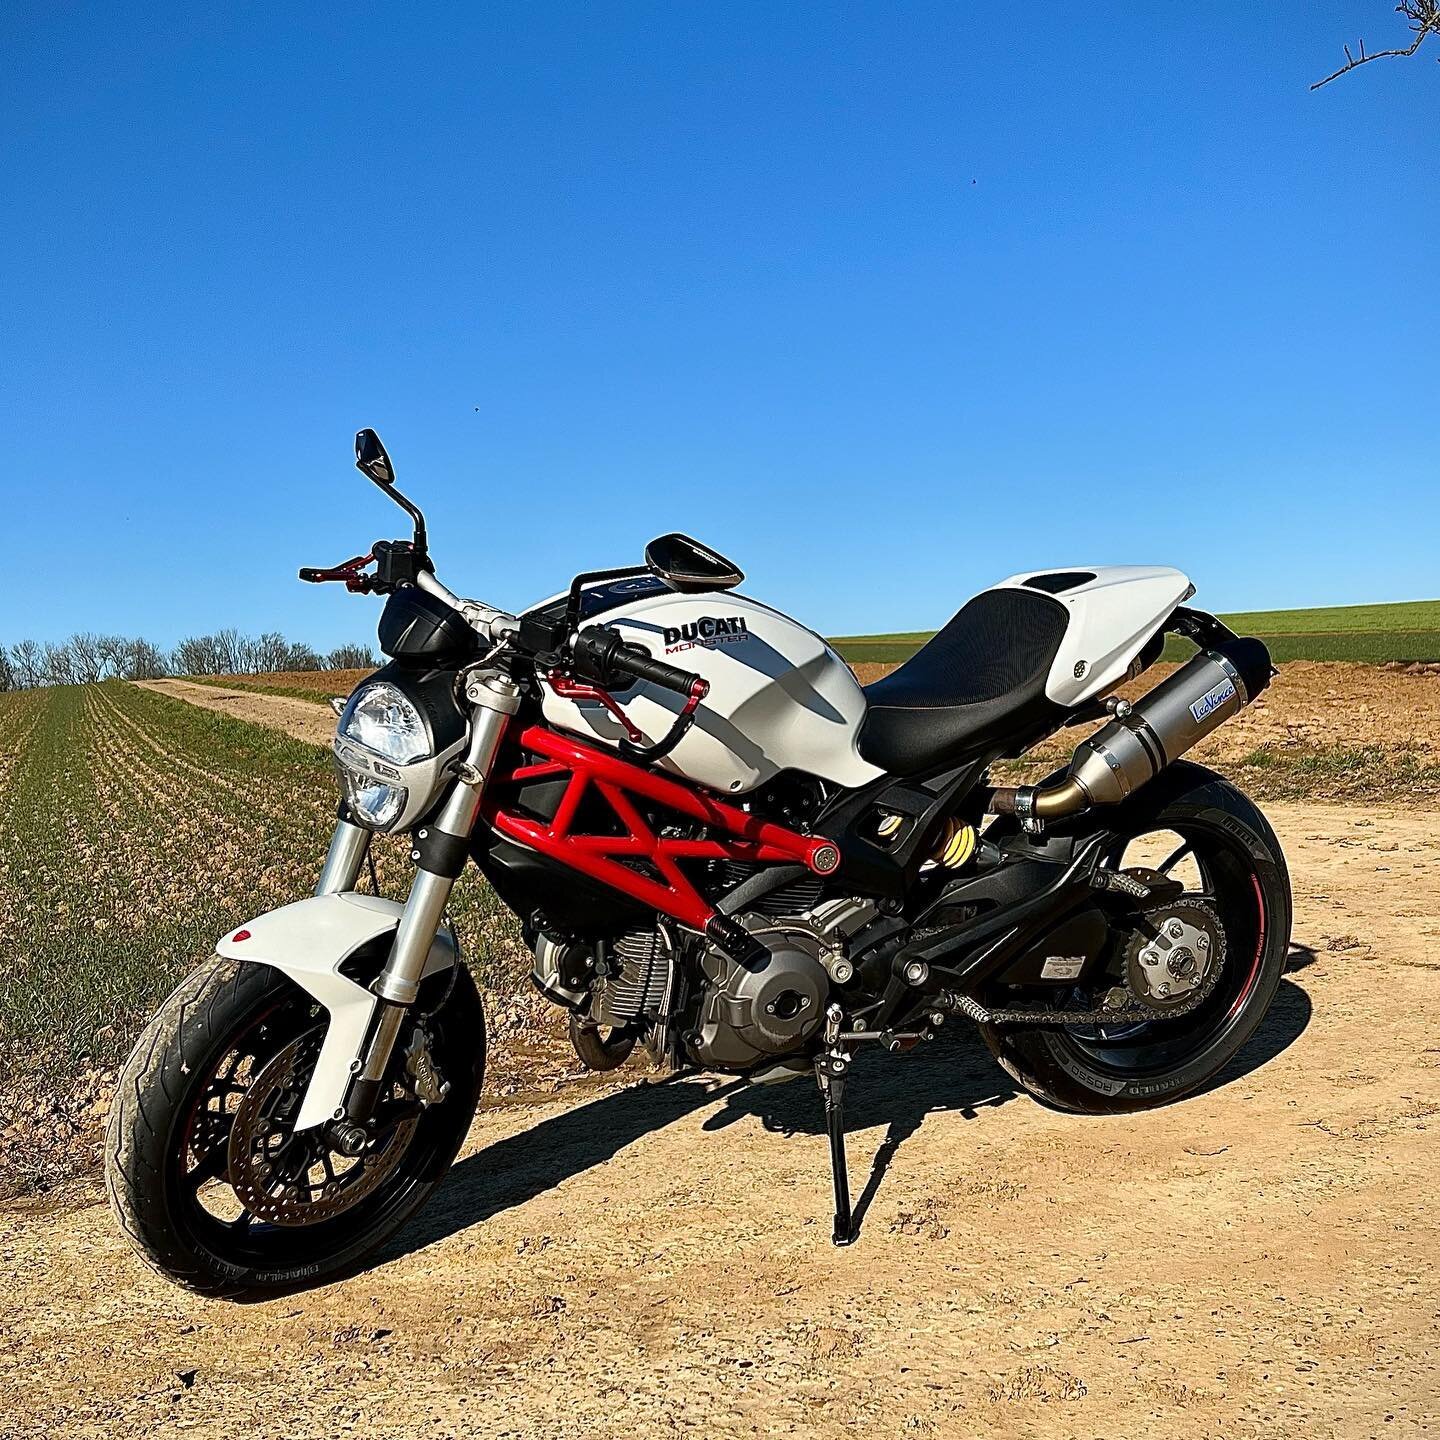 🏍️ 💦

🔲 Ducati Monster 796

▪️T&Uuml;V
▪️neuer Reifensatz
▪️neue Kupplung
▪️gro&szlig;e Inspektion
▪️Zahnriemenwechsel
▪️Leo Vince Abgasanlage
▪️Brems-&amp; Kupplungshebel in rot

Ihr wollt euer Fahrzeug optimieren lassen oder ben&ouml;tigt eine R